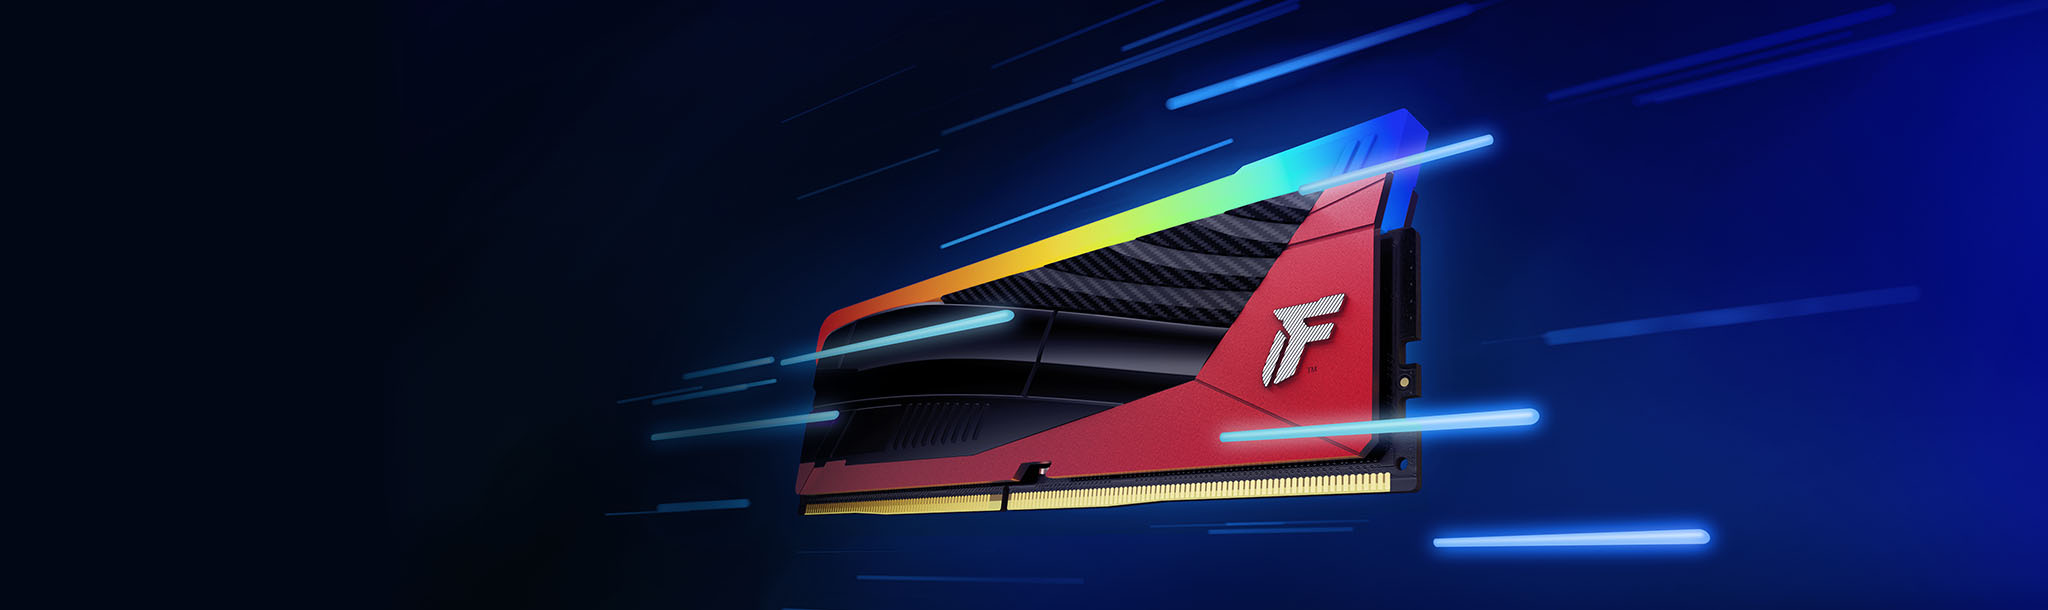 Thanh RAM Kingston FURY Renegade DDR5 RGB Limited Edition với các vệt mờ thể hiện tốc độ